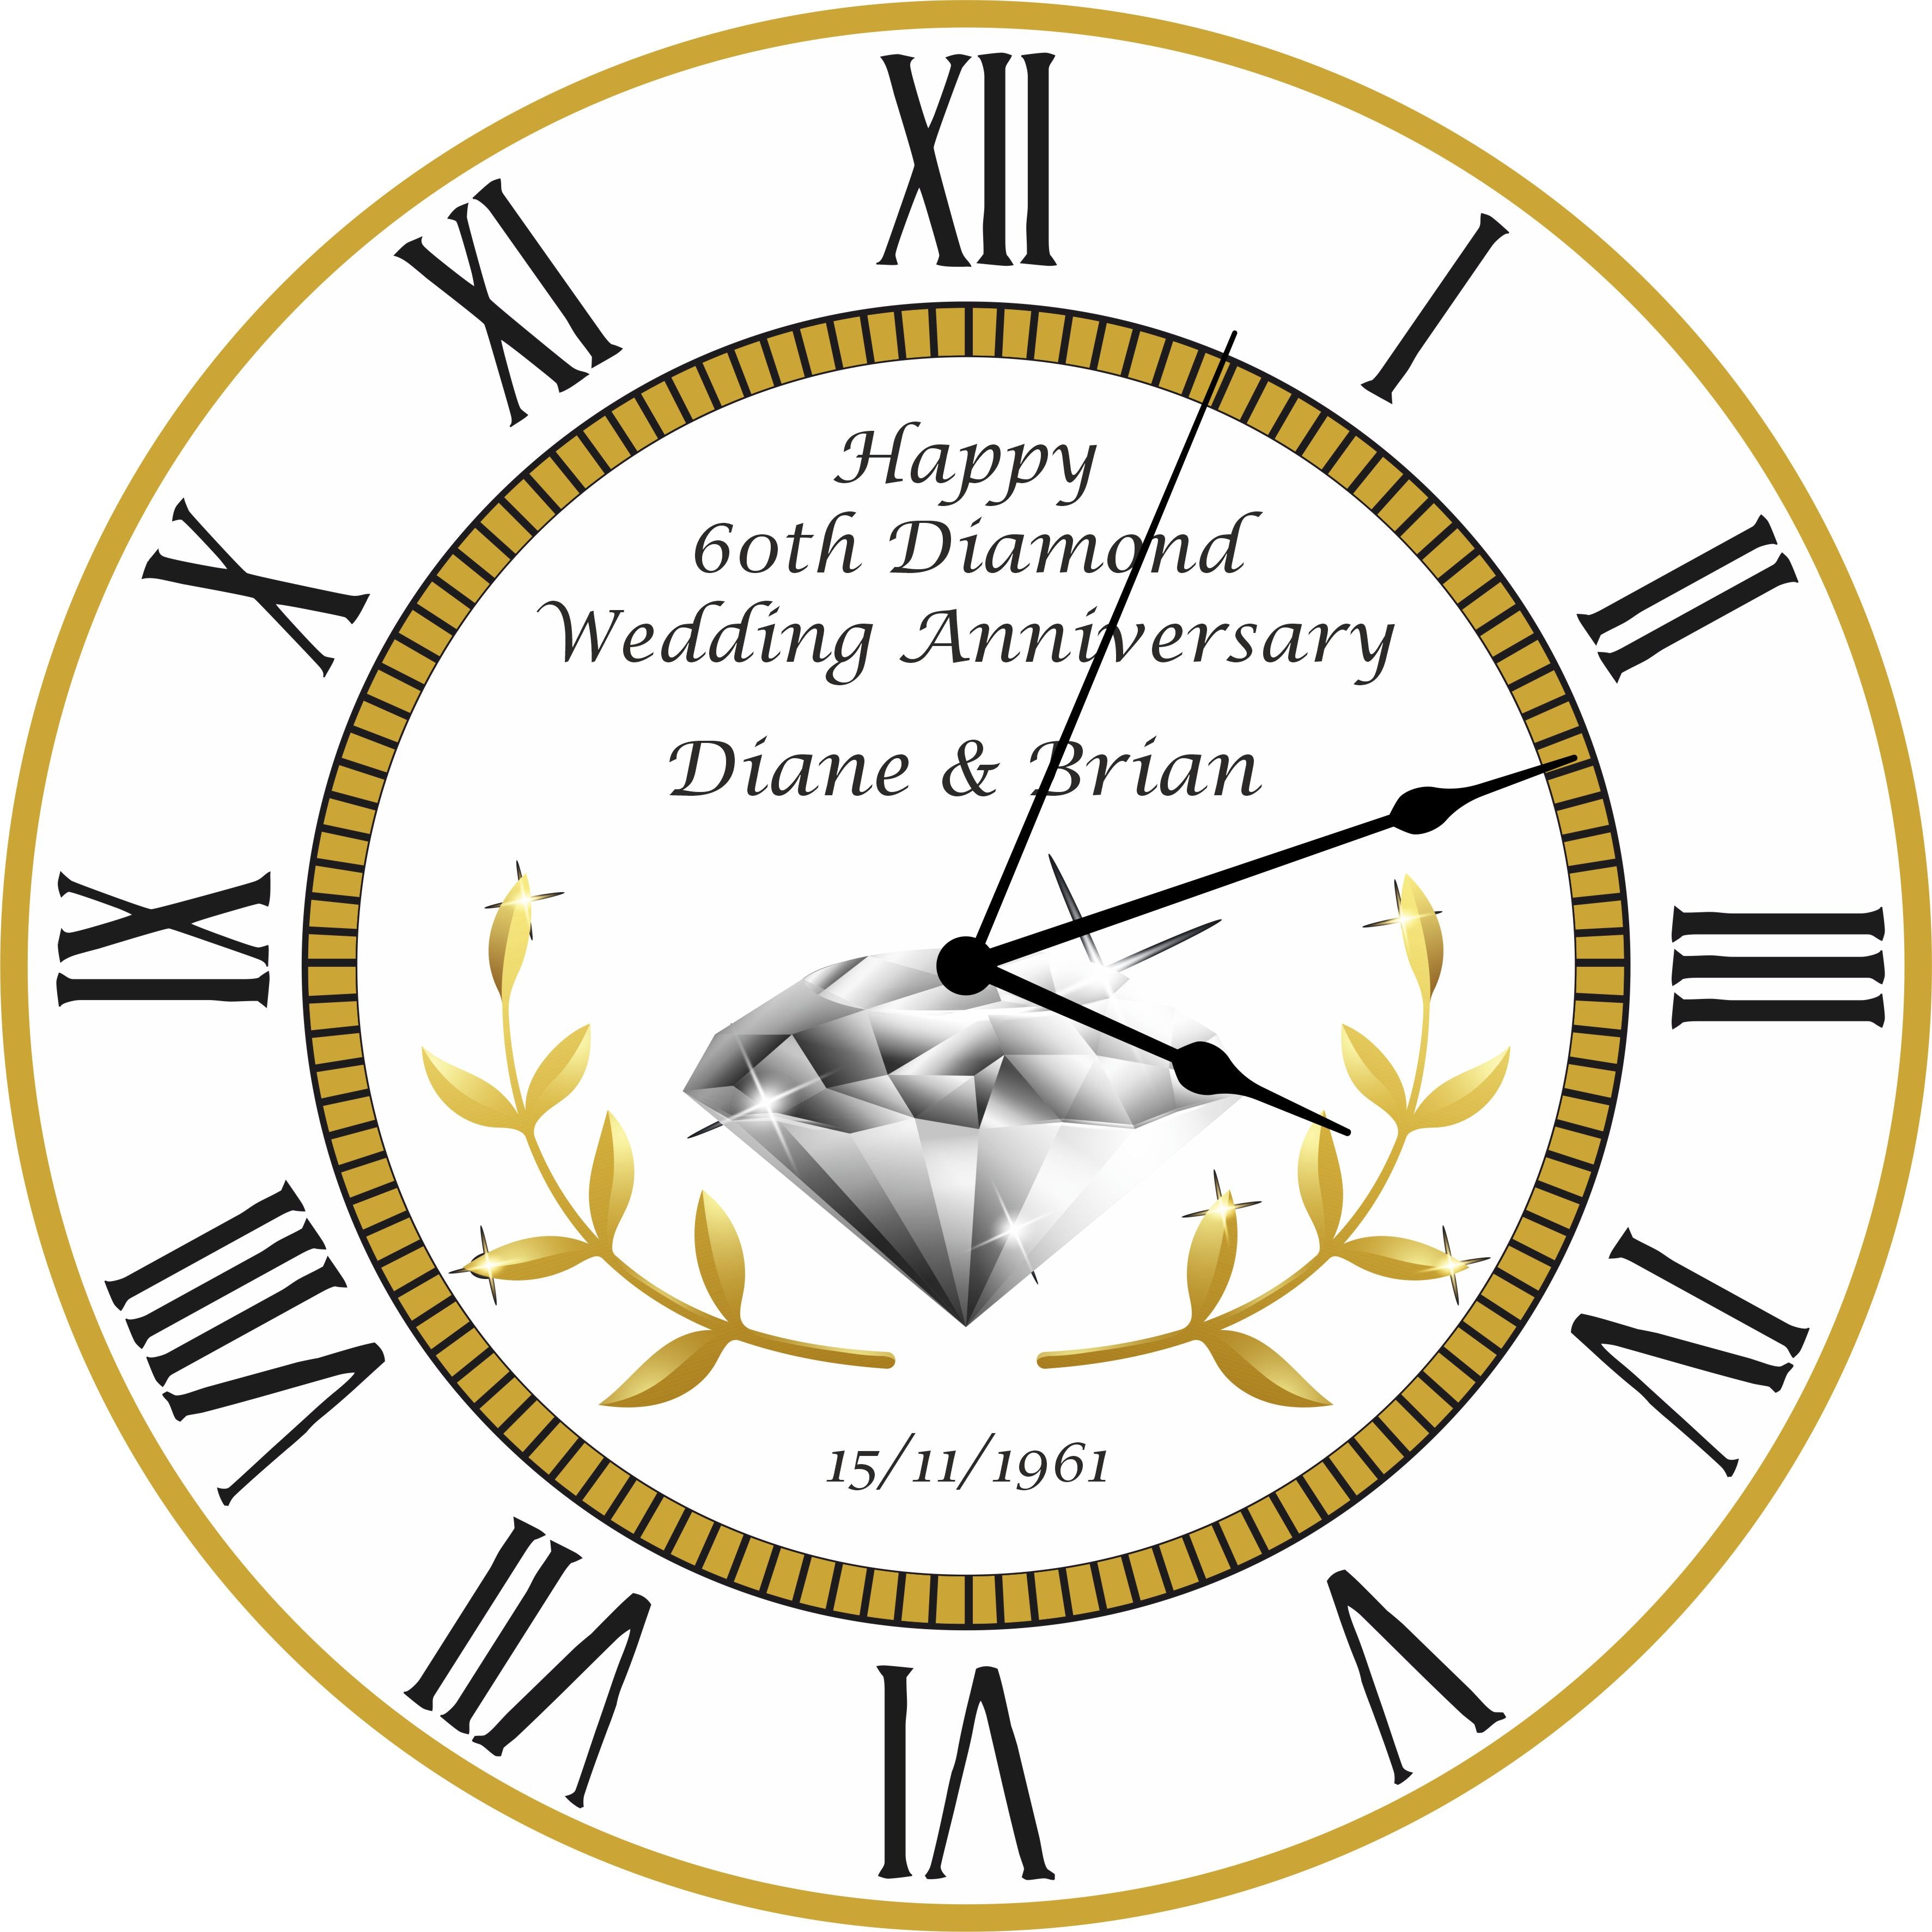 60th Diamond Wedding Anniversary Clock - Bespoke Personalised Anniversary Gift (30cm Silent Clock)